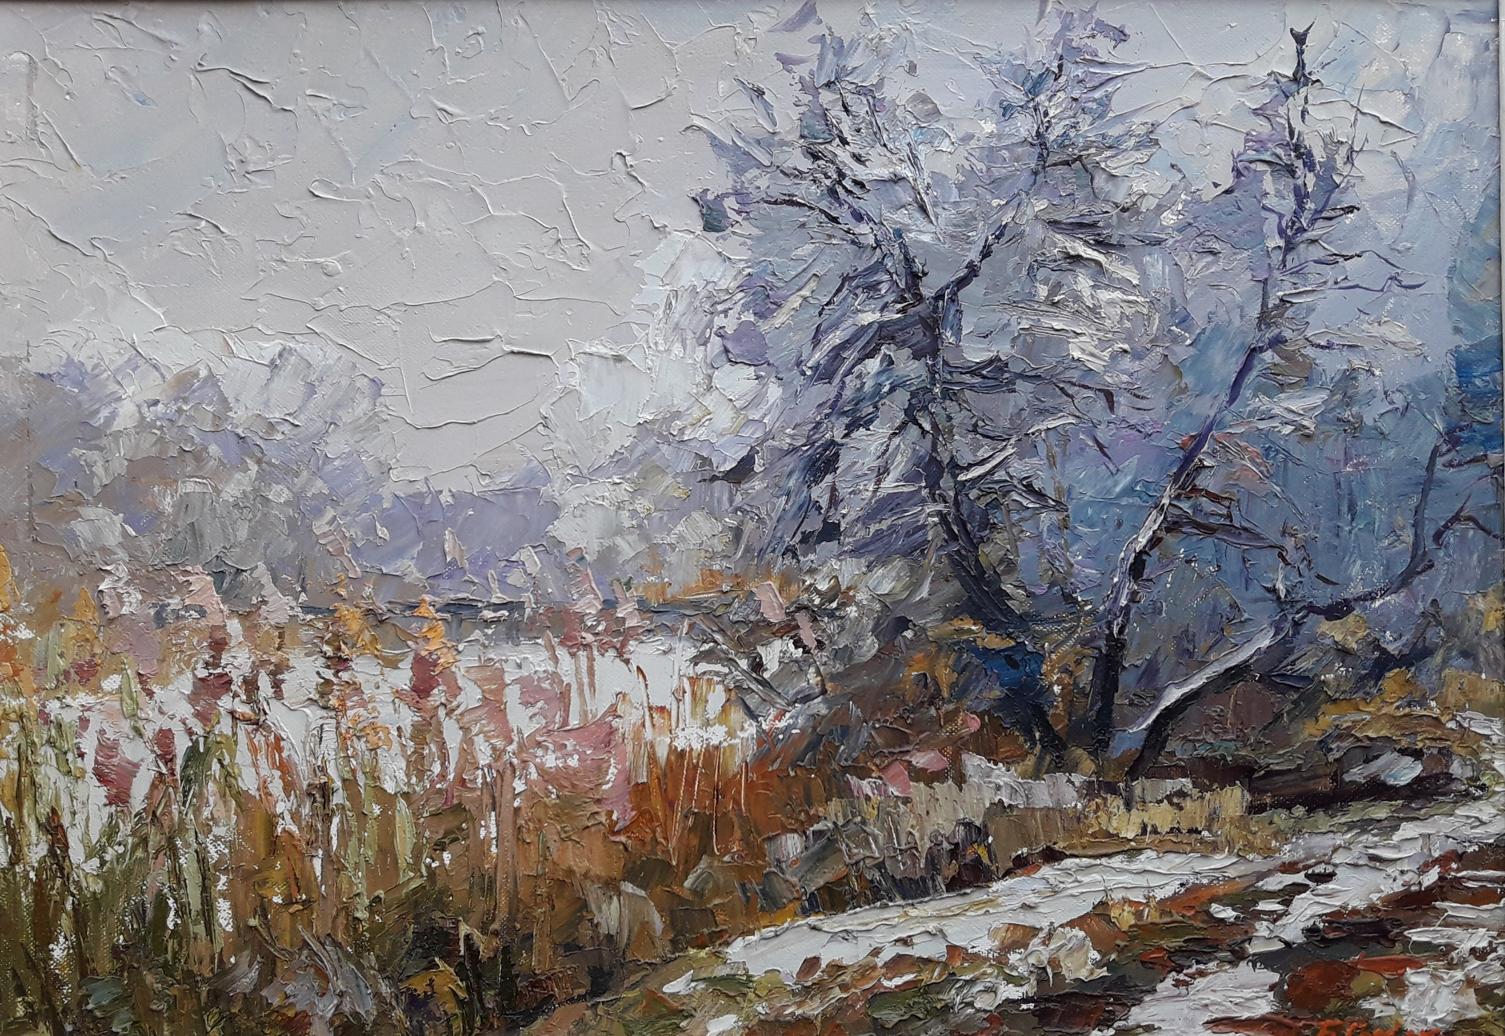 Oil painting Breath of winter / Serdyuk Boris Petrovich